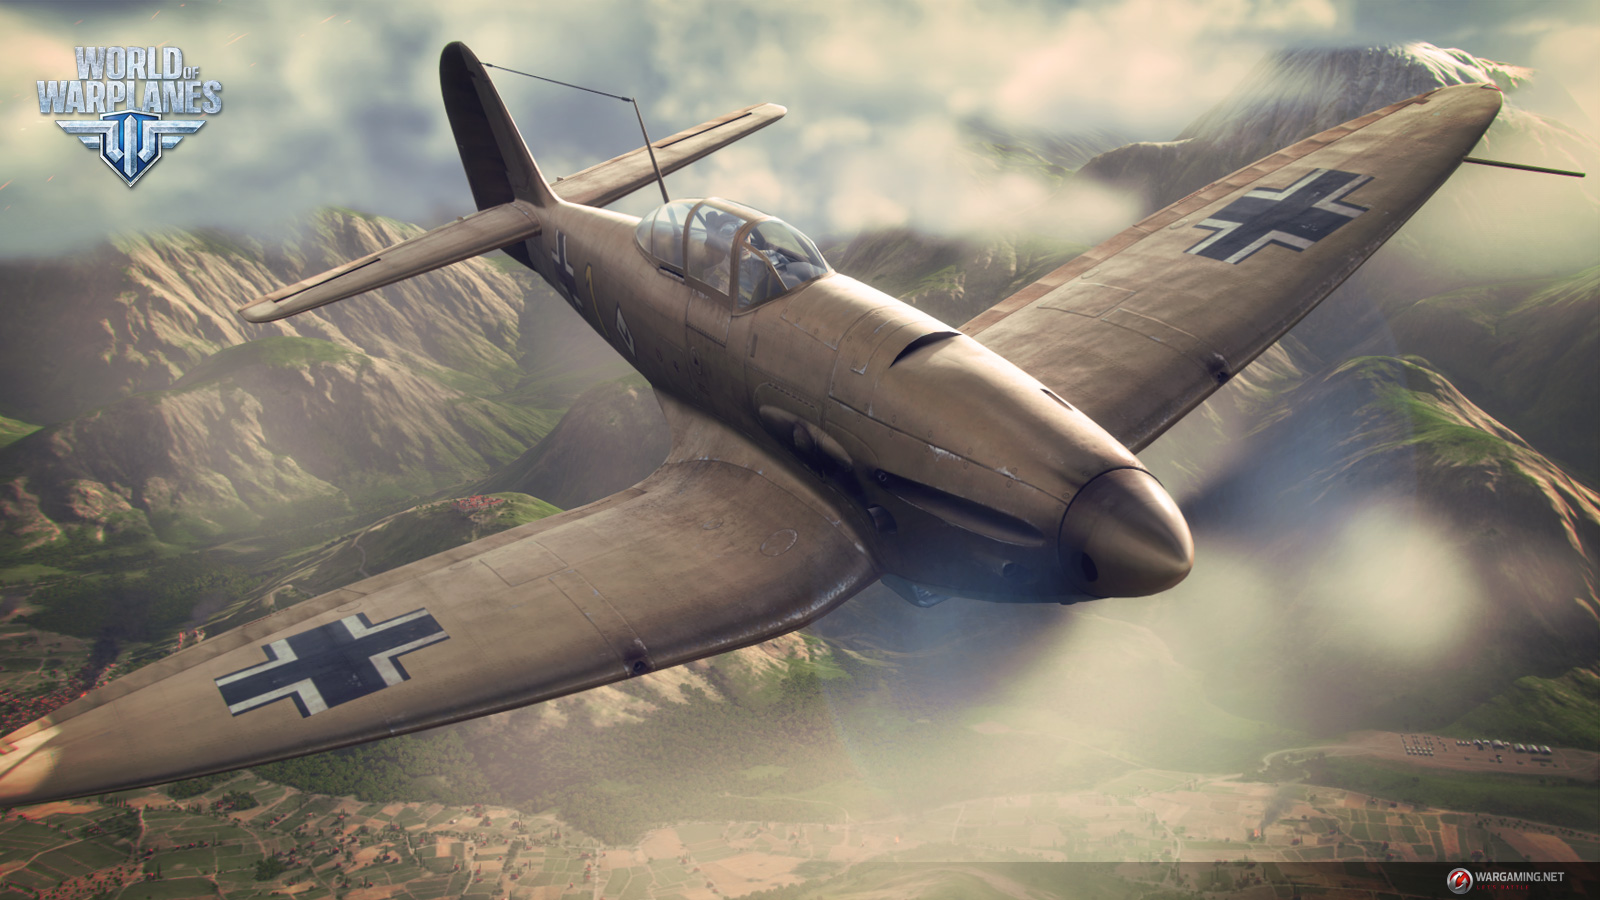 World of Warplanes Update 1.1 is Live! | World of Warplanes